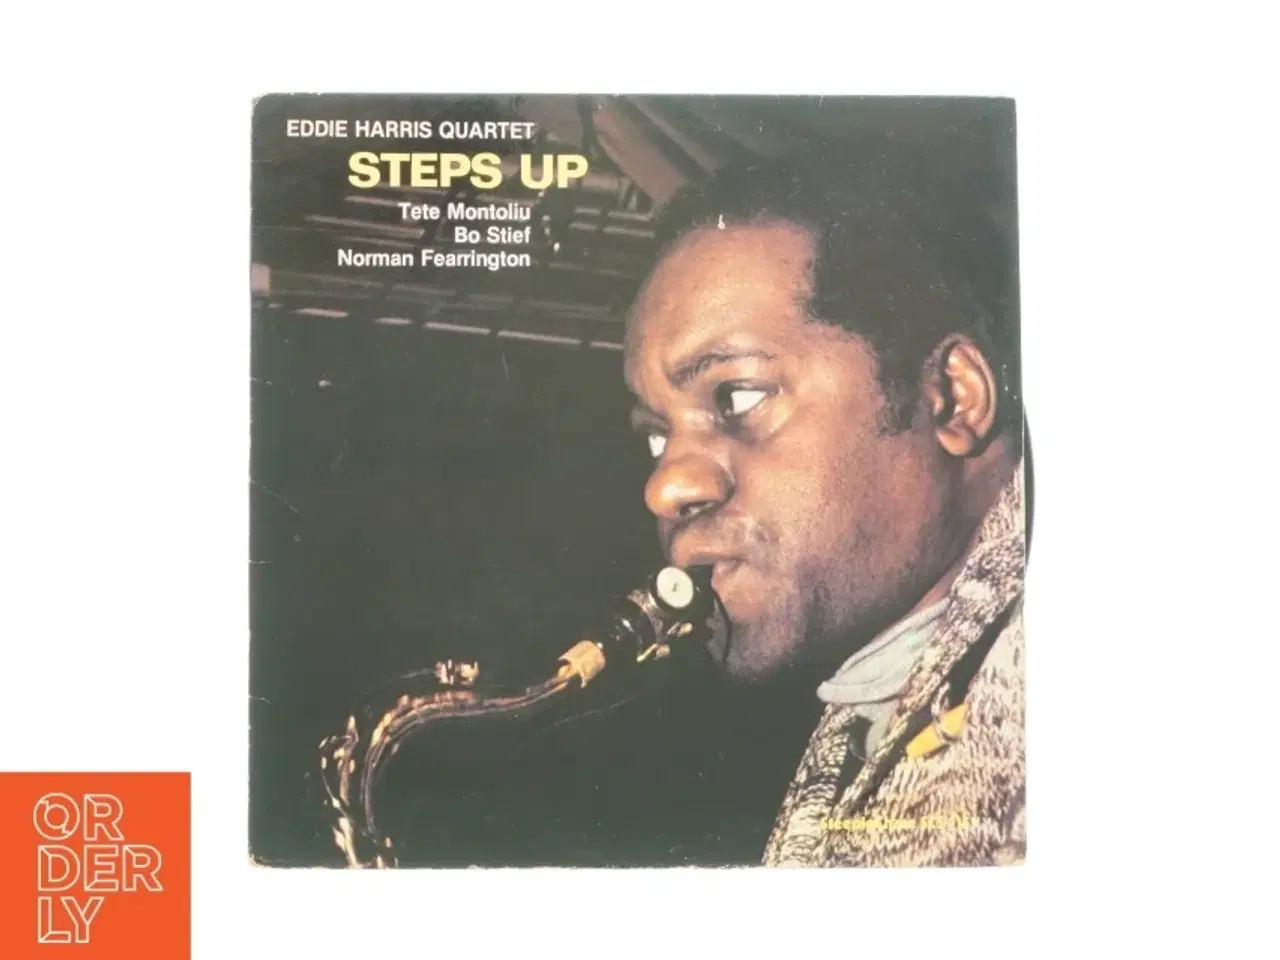 Billede 1 - Steps Up af Eddie Harris Quartet fra LP